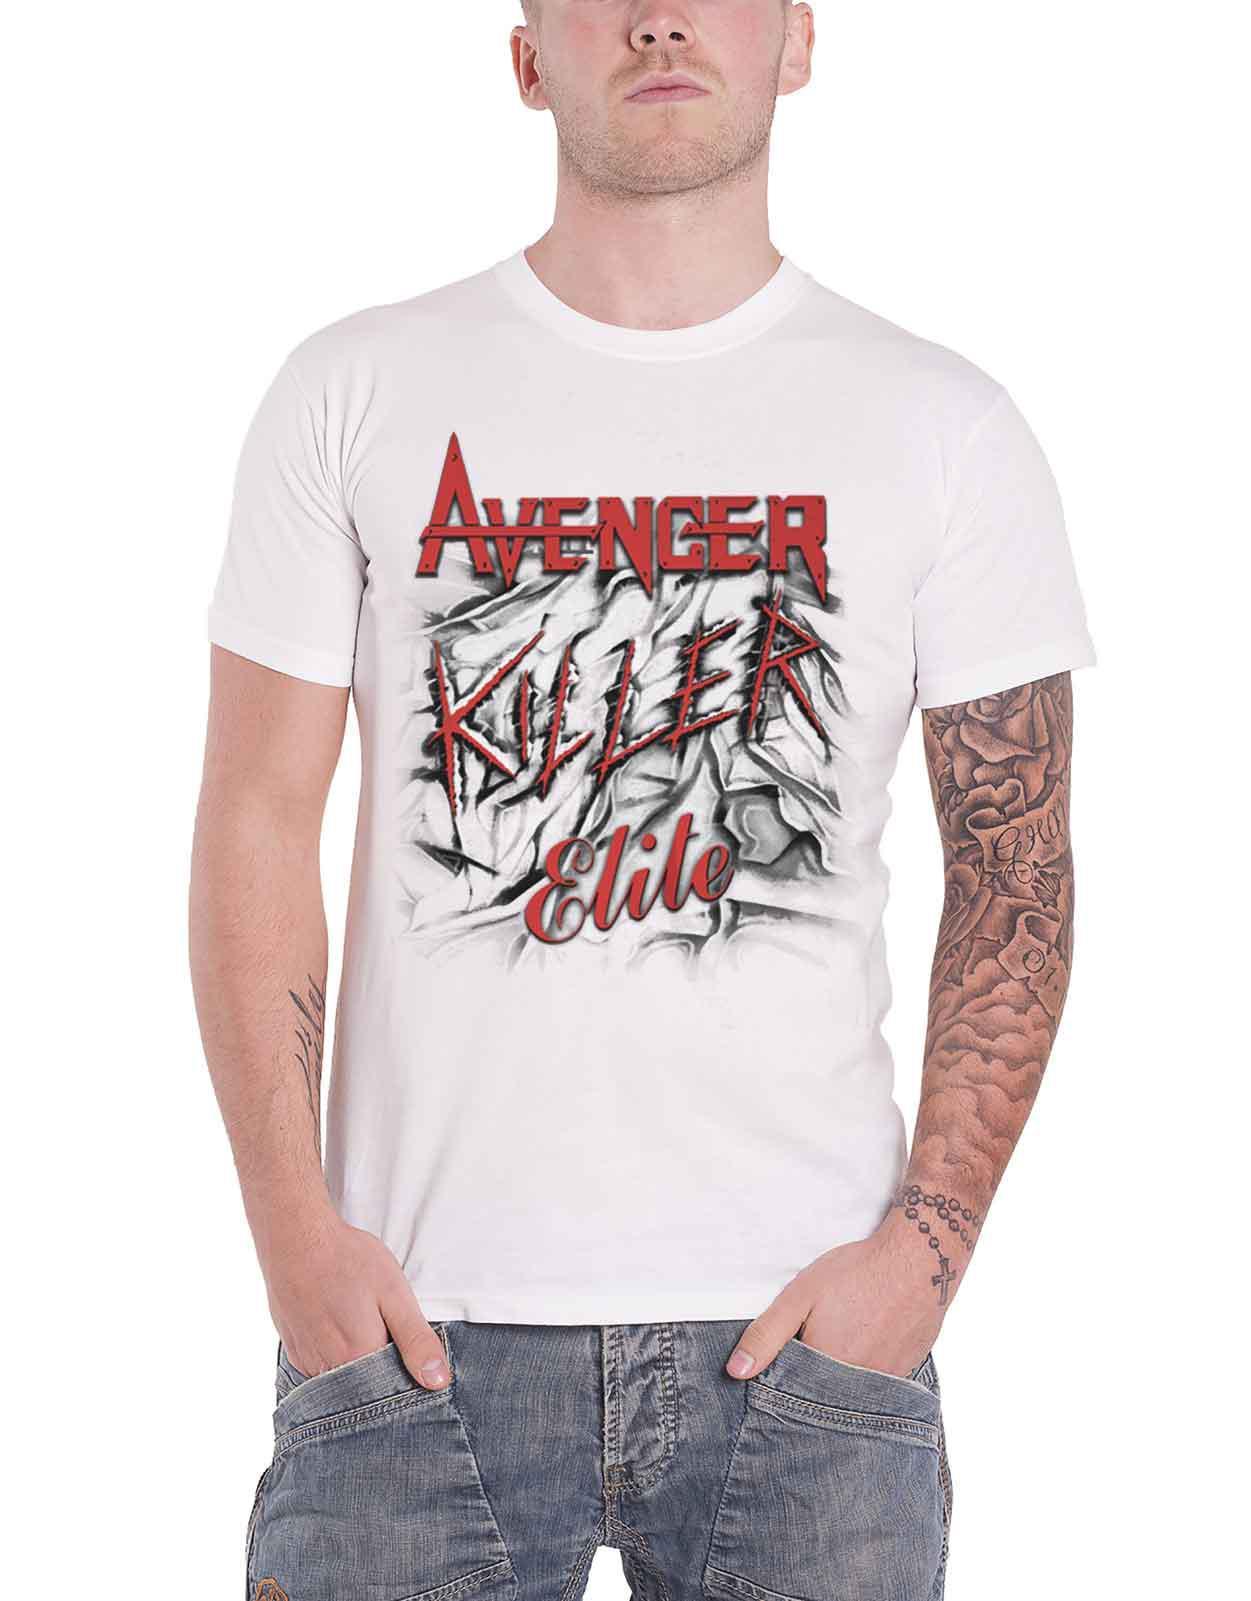 Avenger T Shirt Killer Elite Album Cover Band Logo new Official Mens White